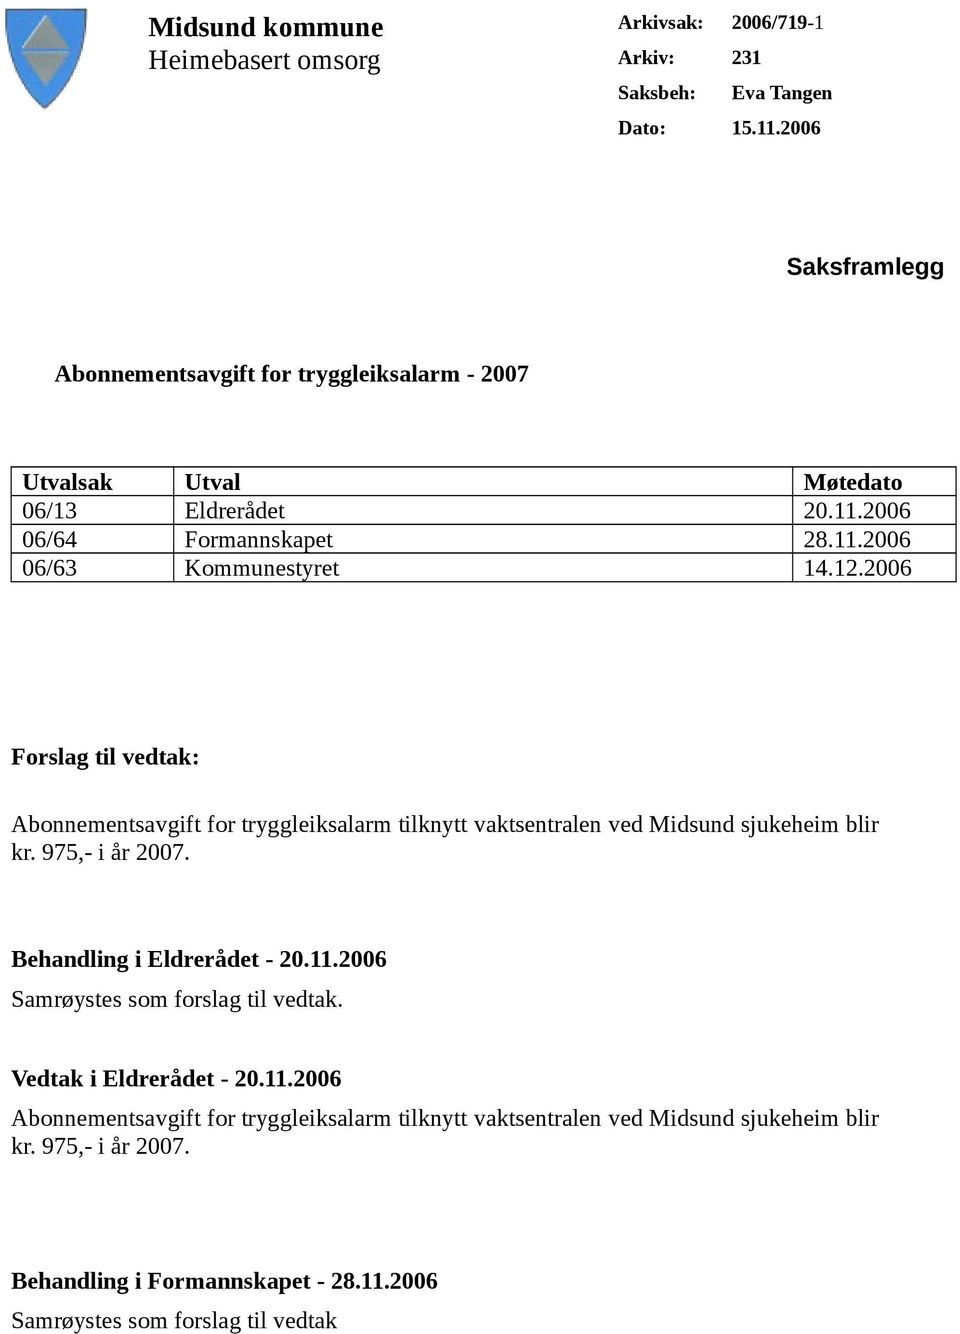 2006 Forslag til vedtak: Abonnementsavgift for tryggleiksalarm tilknytt vaktsentralen ved Midsund sjukeheim blir kr. 975,- i år 2007. Behandling i Eldrerådet - 20.11.